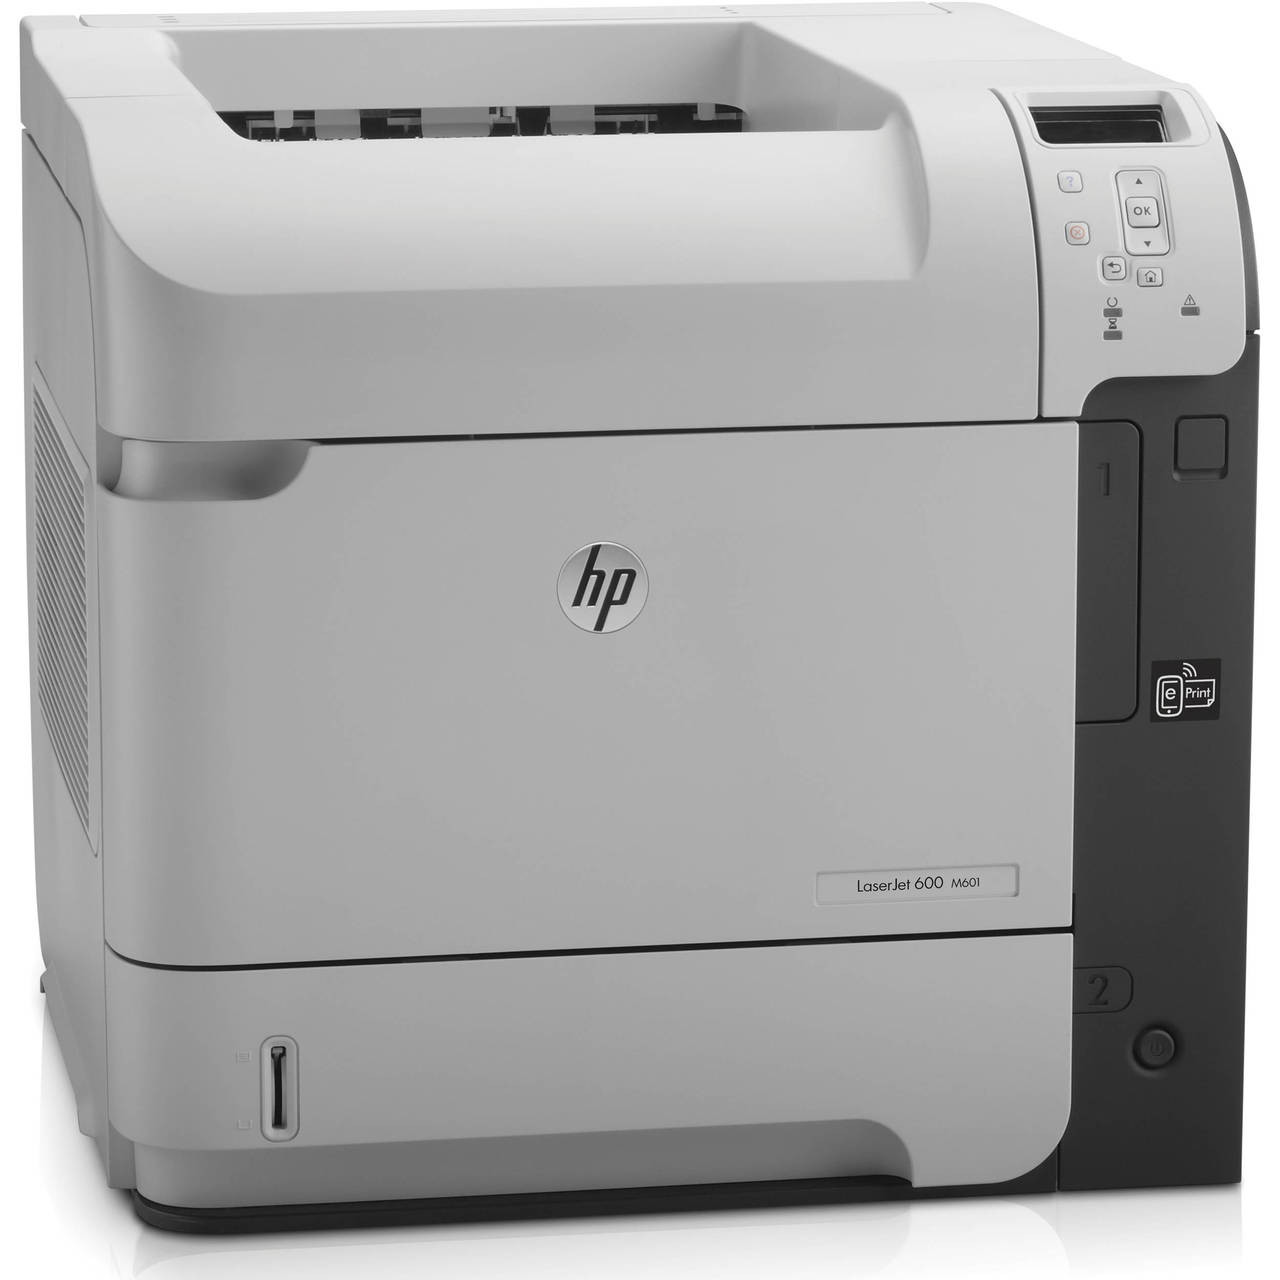 HP LaserJet 600 m601n - ce989a - HP Laser Printer for sale